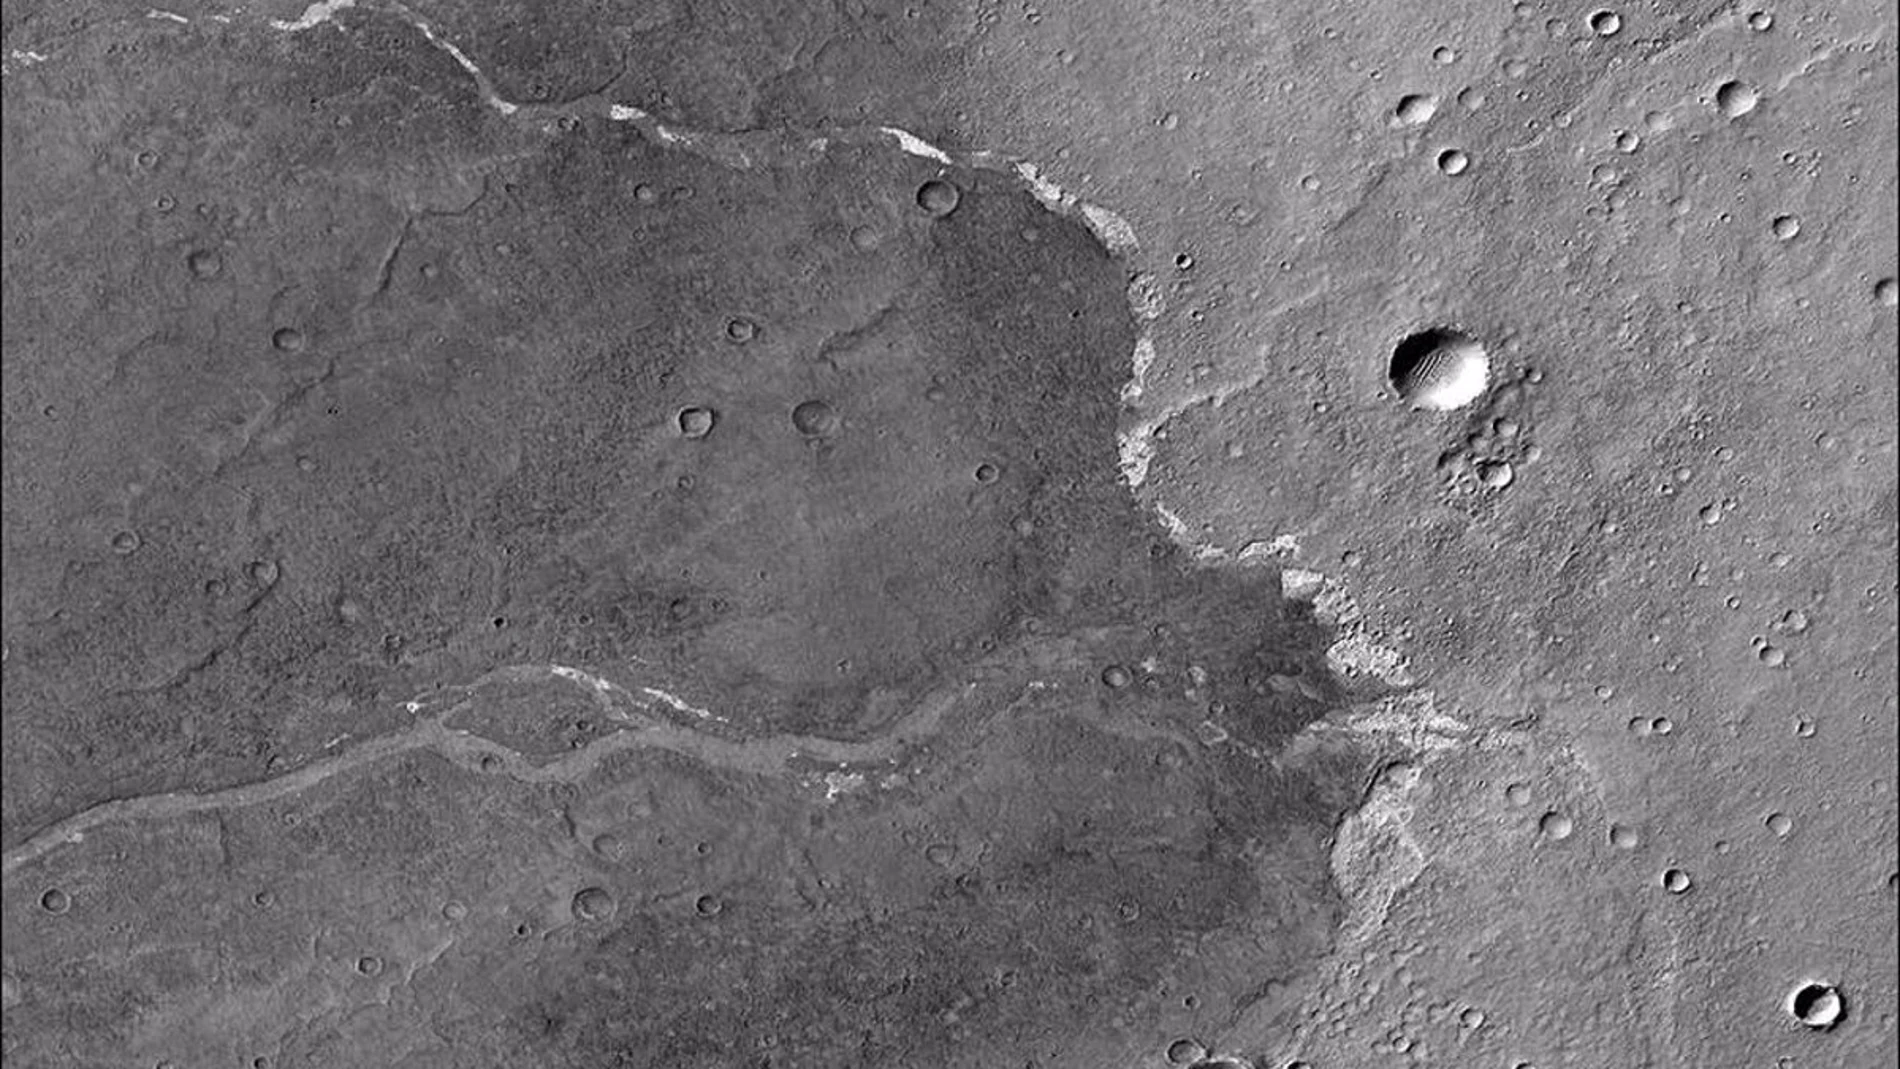 Las motas blancas son depósitos de sal que se encuentran dentro de un canal seco en Marte